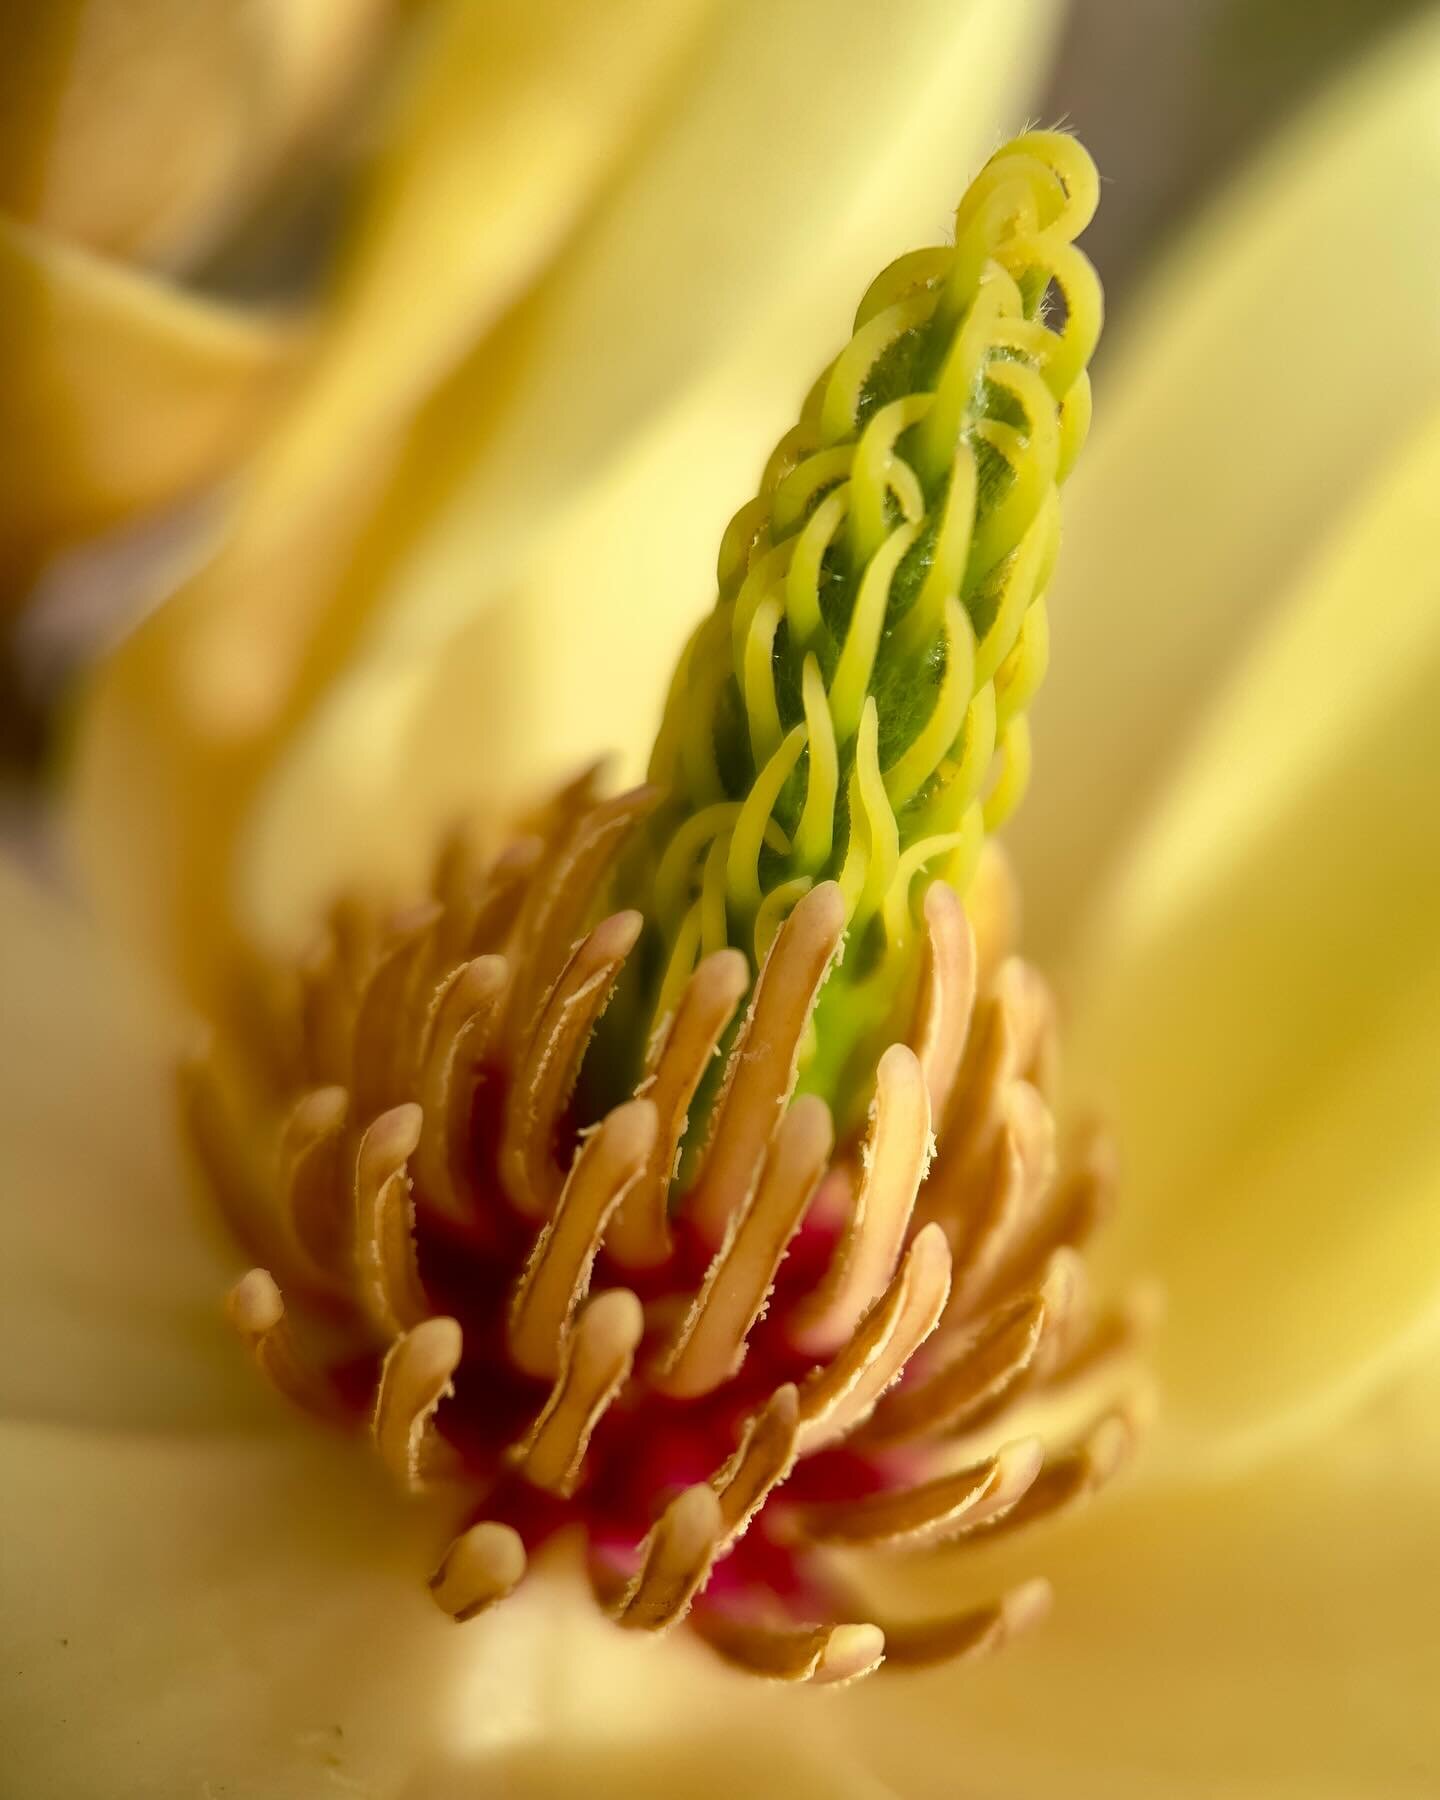 The rarely seen yellow magnolia magic ~ from a neighbors garden ~